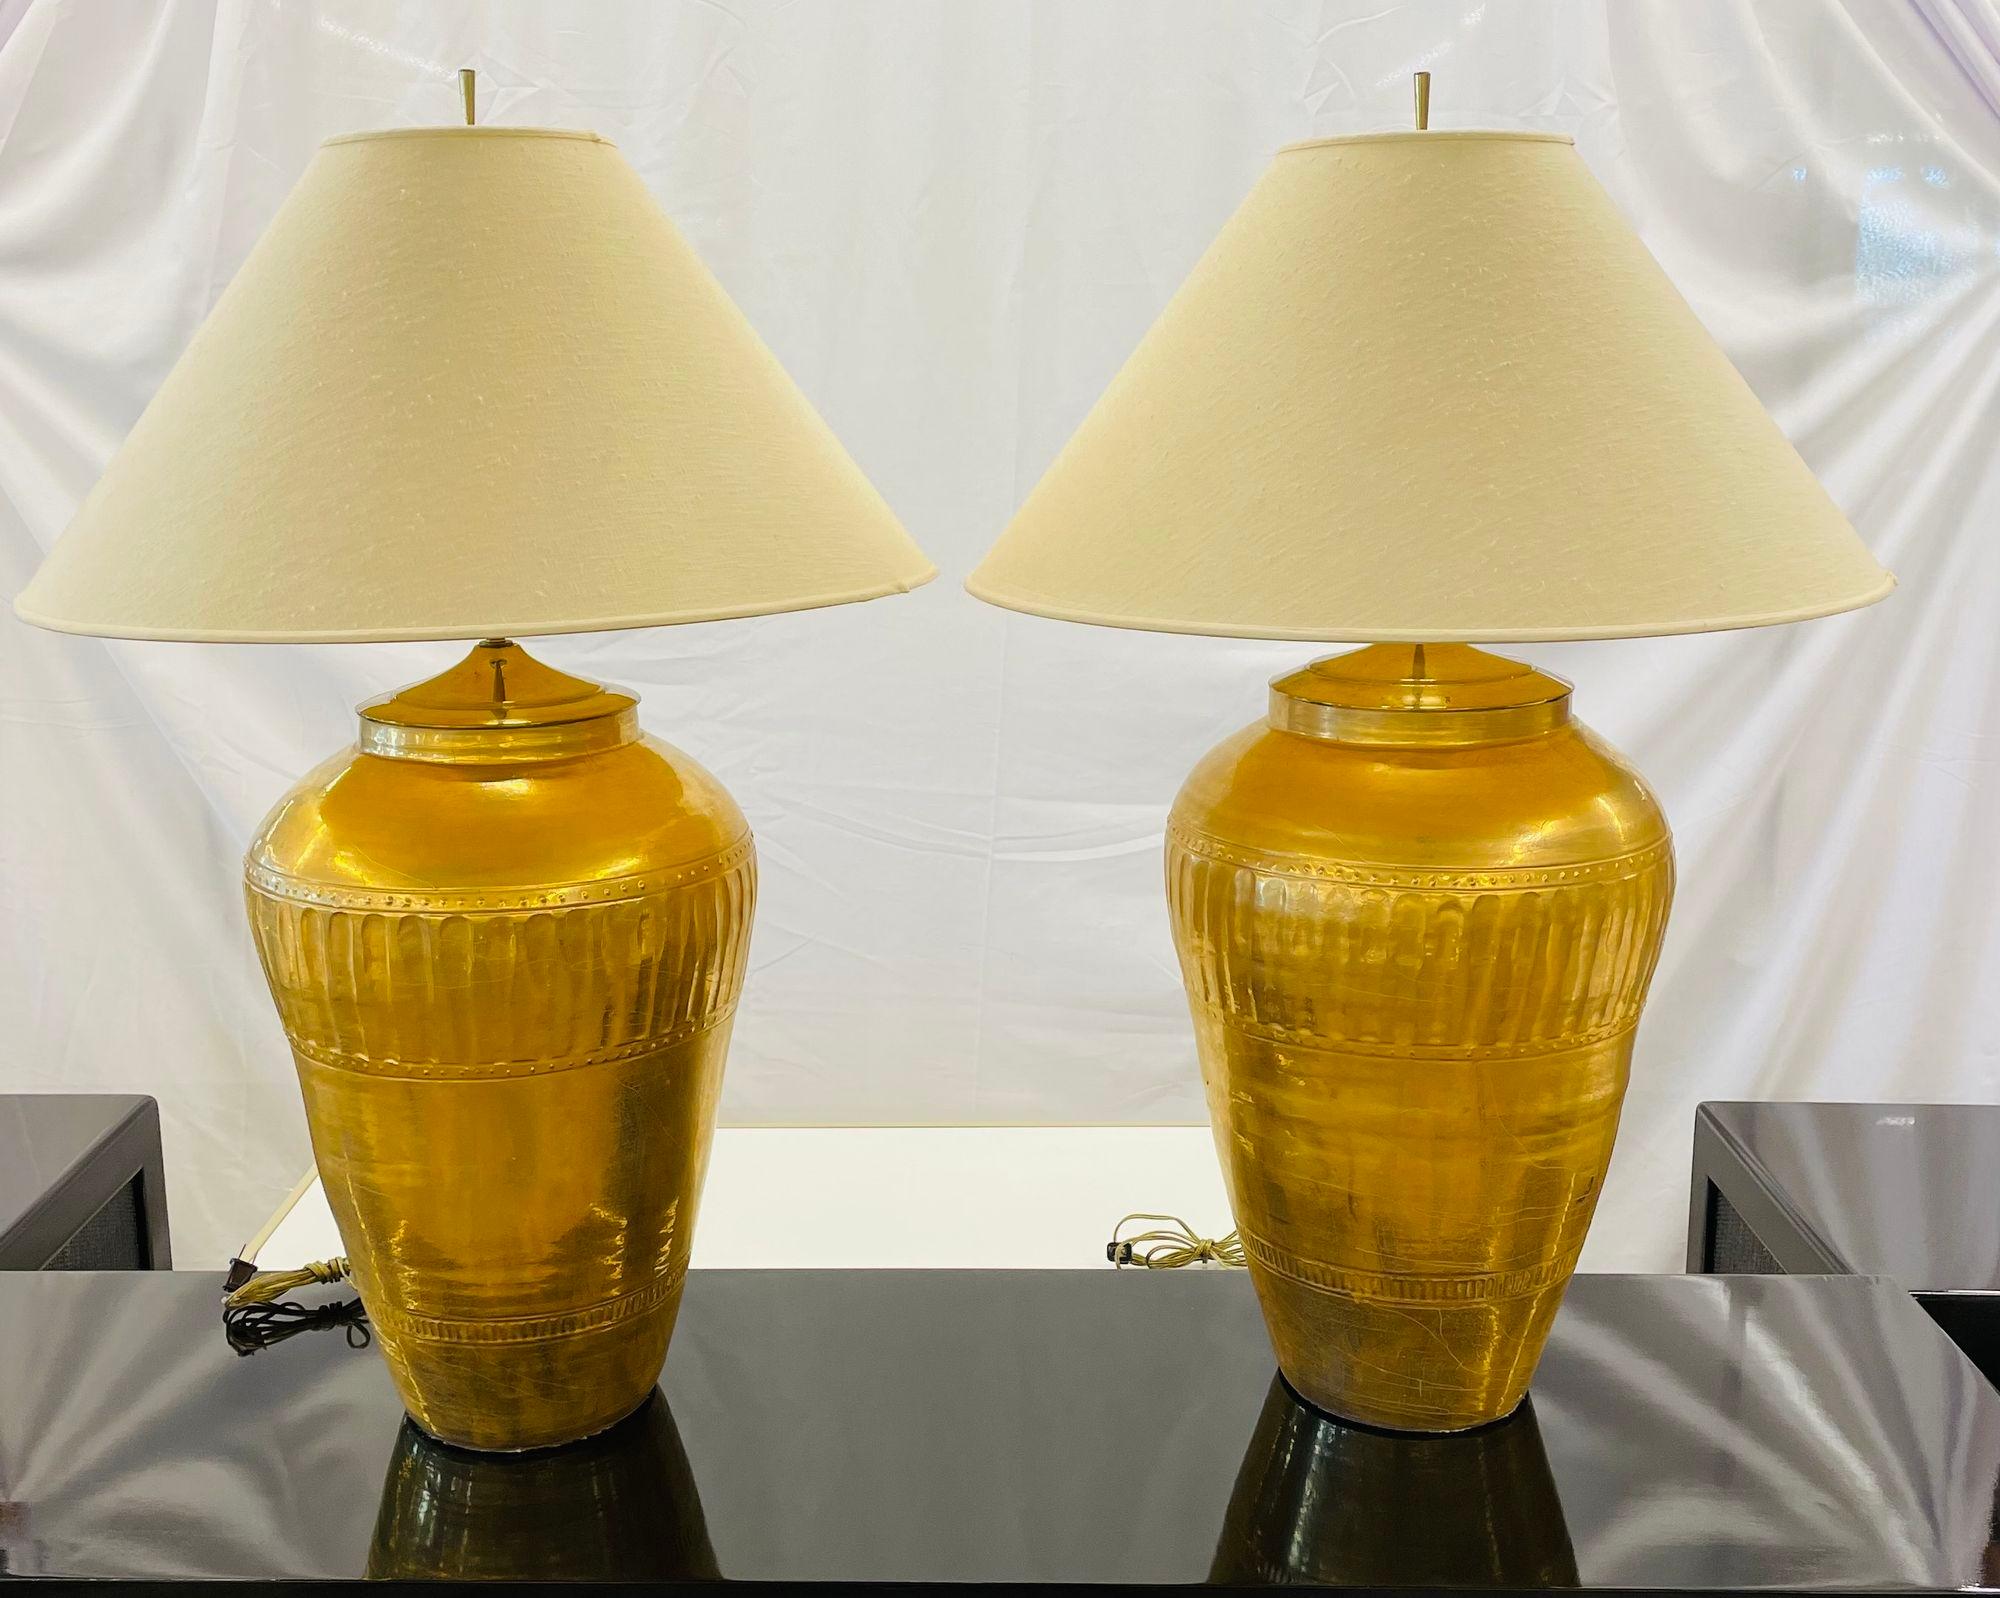 Paar palastartige Urnen-Tischlampen aus vergoldetem Metall, Hollywood Regency
 
Ein monumentales Paar Tischlampen in Form eines Ingwergefäßes aus feinem wasservergoldetem Crackleware-Metall mit jeweils zwei neu verdrahteten Lichtern. Das Paar mit